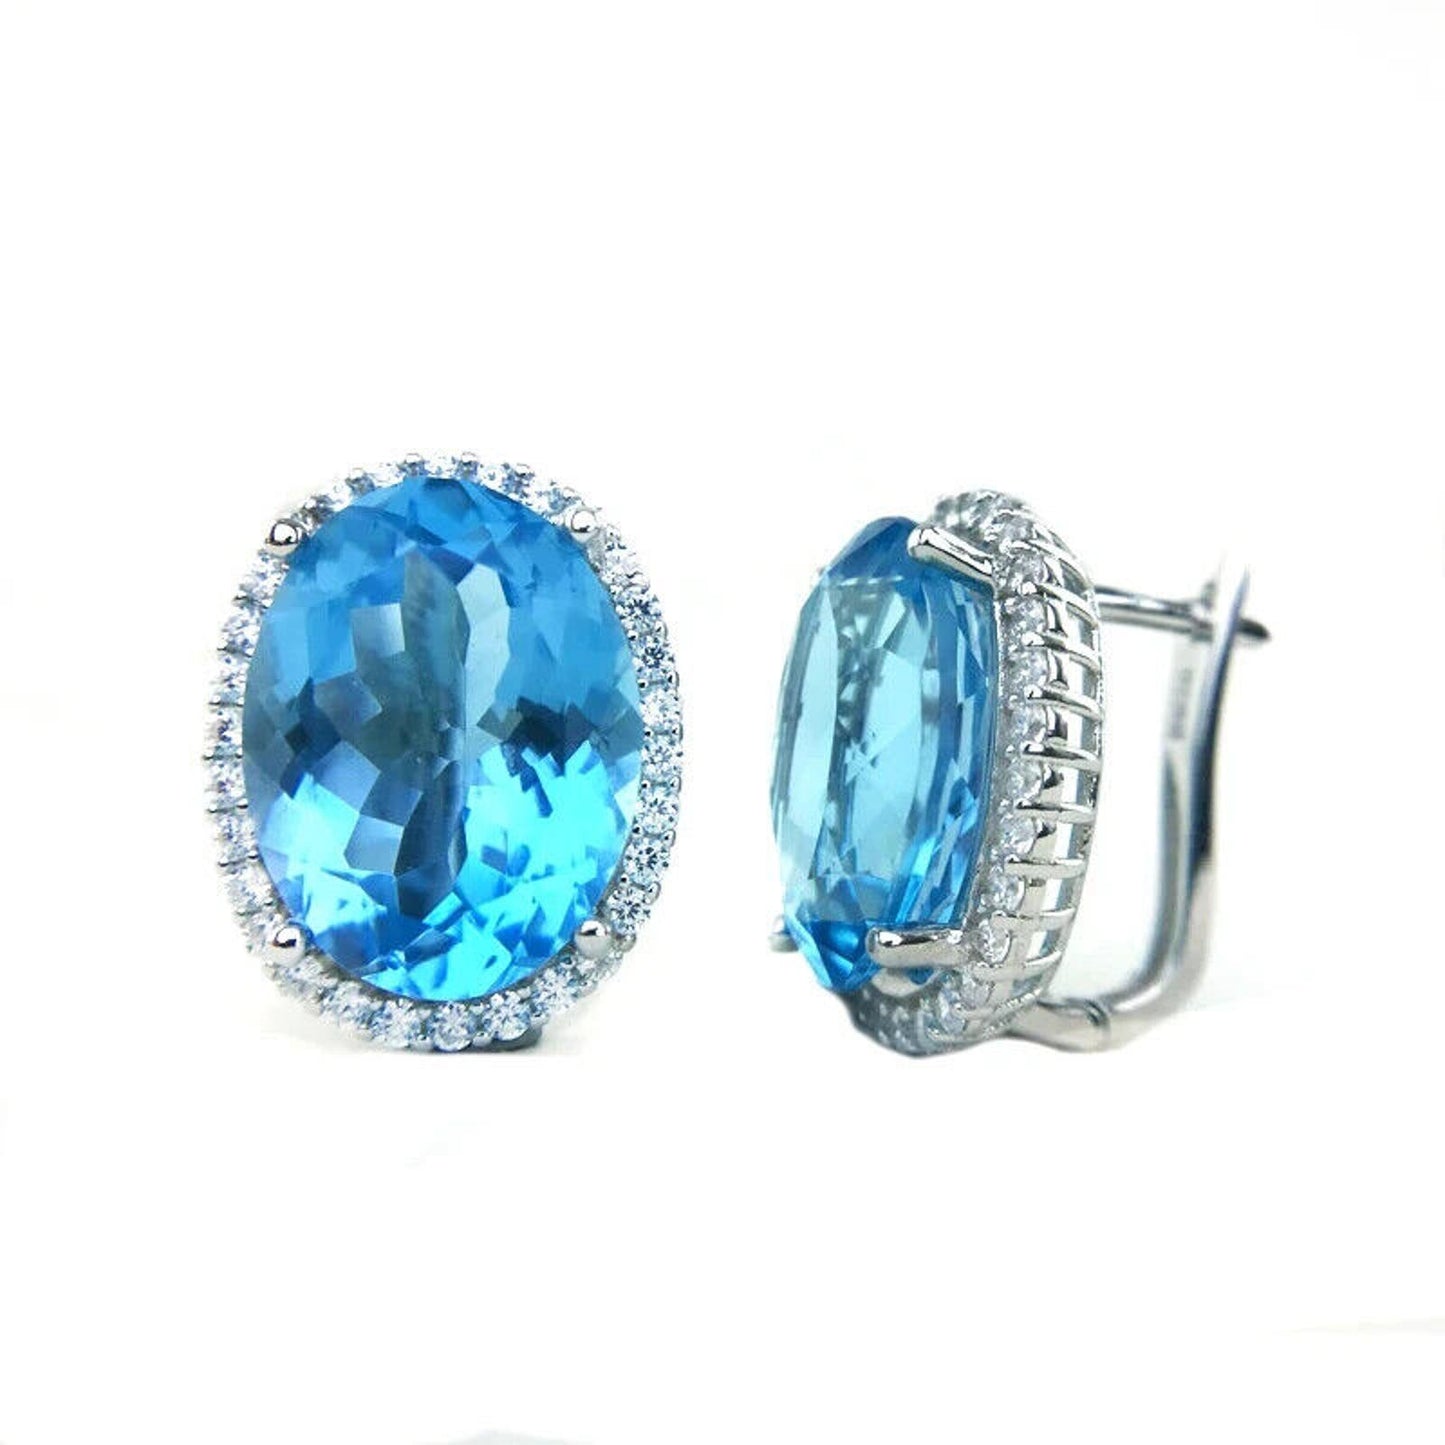 Swiss Blue Topaz Oval Cut Earrings 12x16mm, 23ct Blue Topaz 925 Sterling Silver